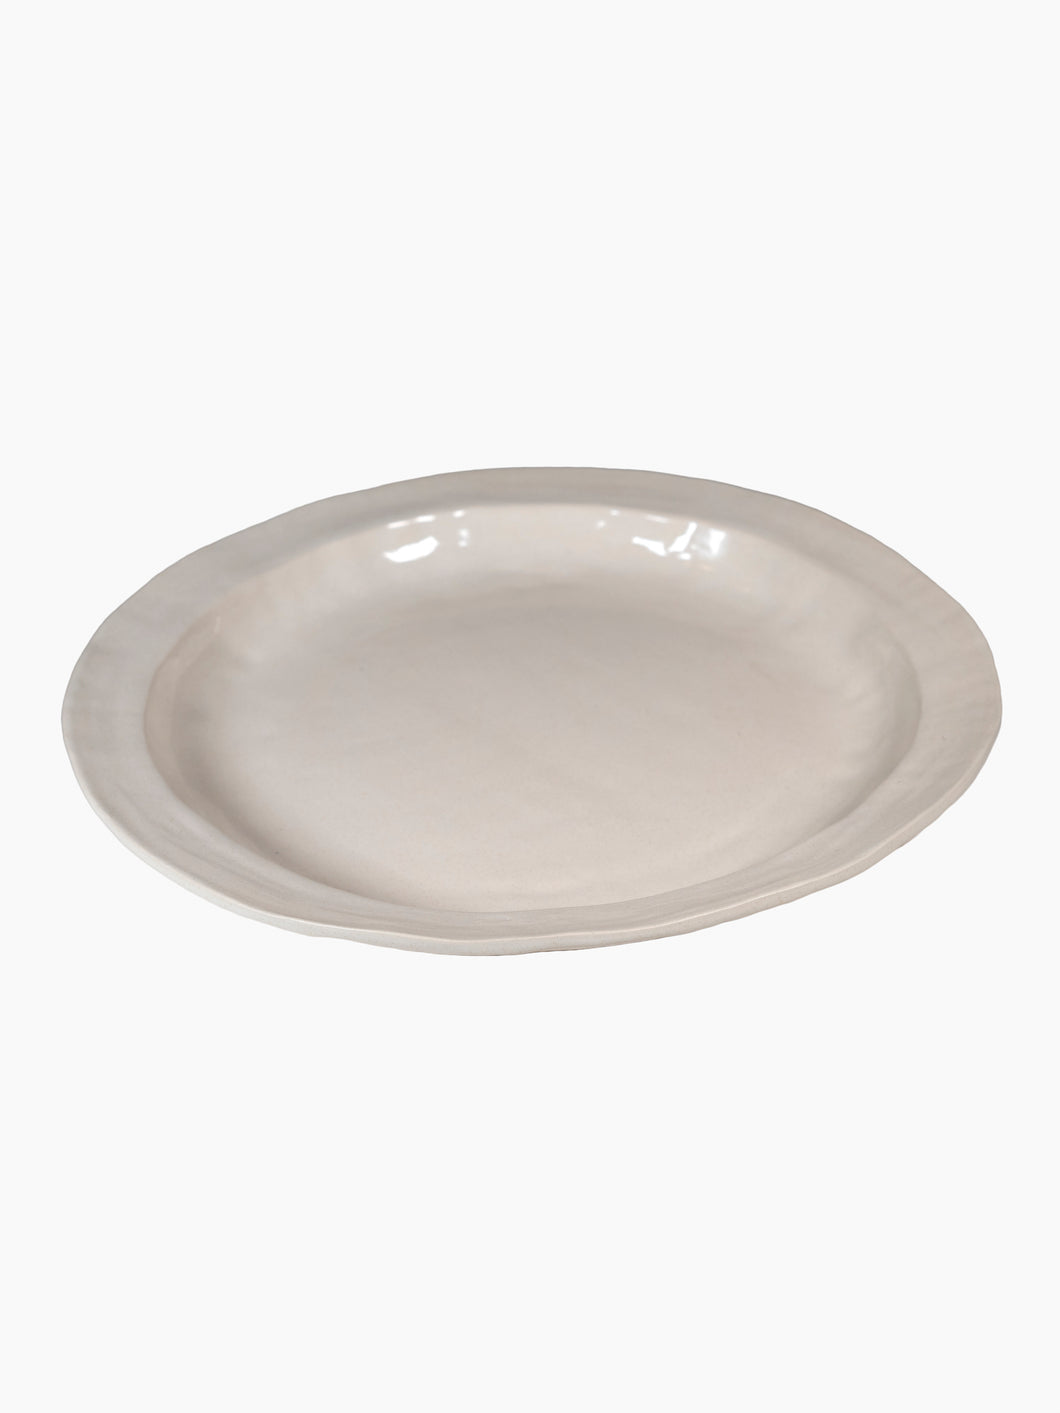 ANK Ceramics White Round Platters